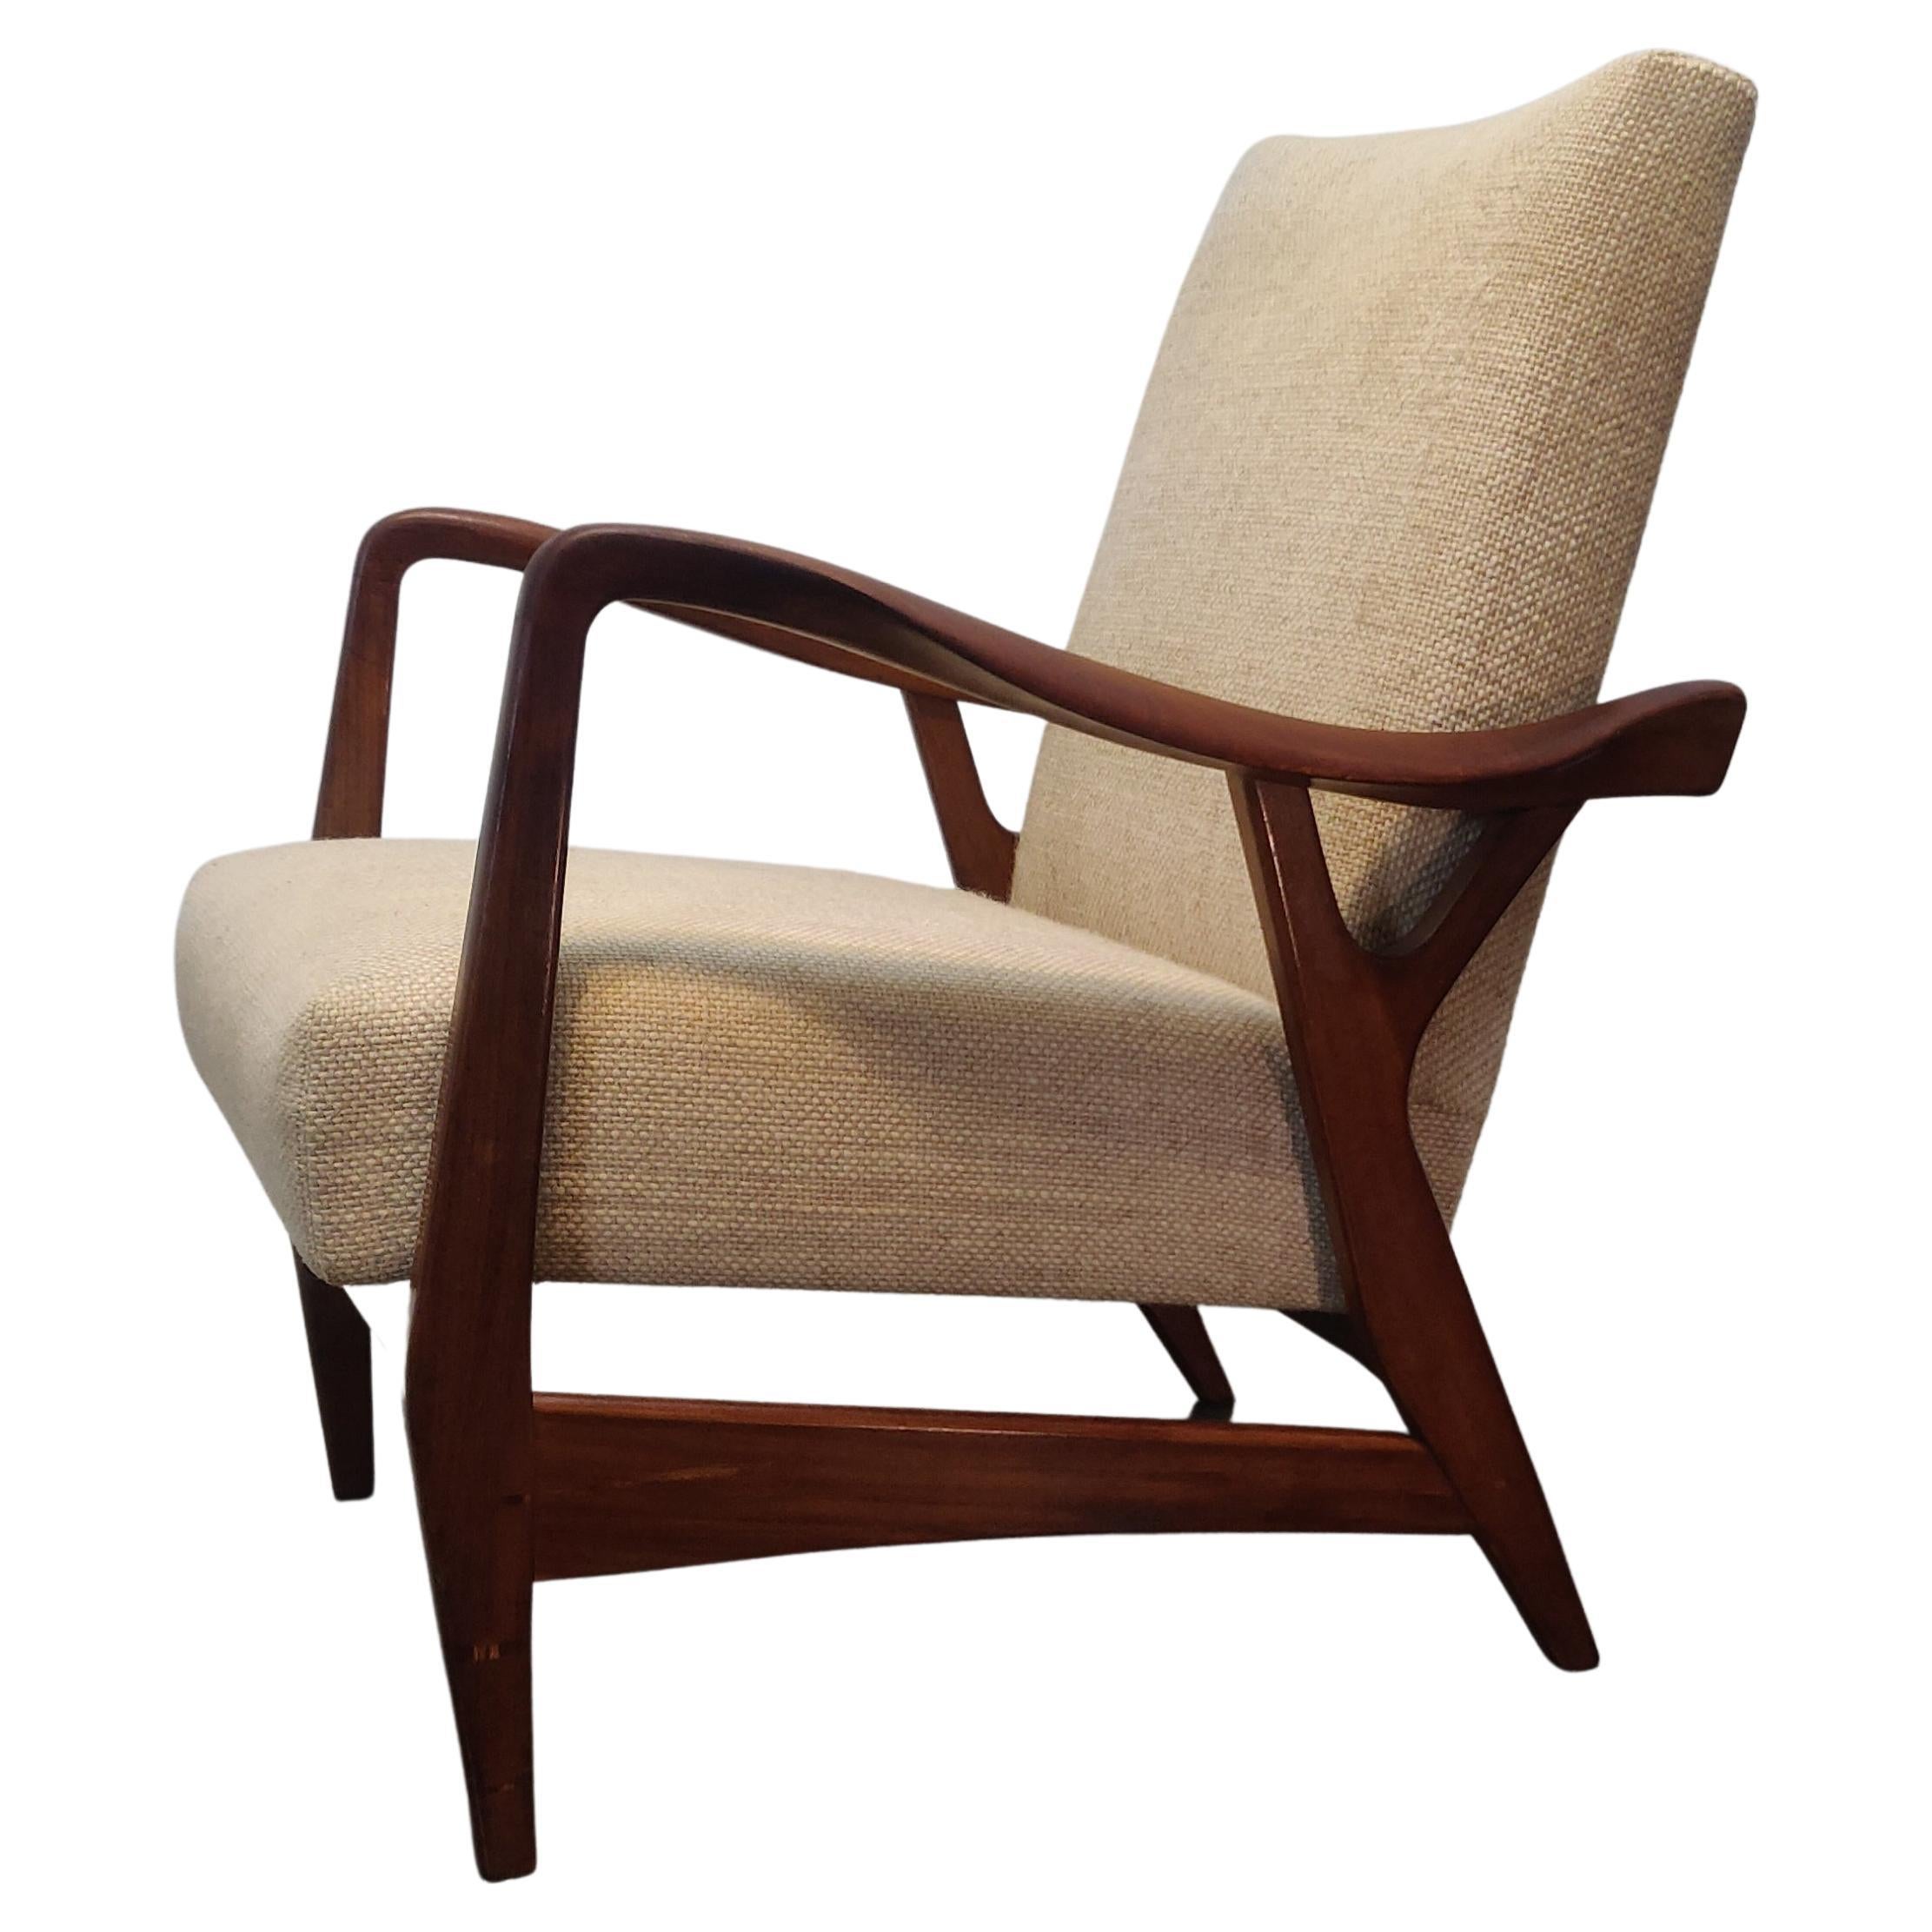 Chaise longue massive en teck de forme organique par Topform, années 1950